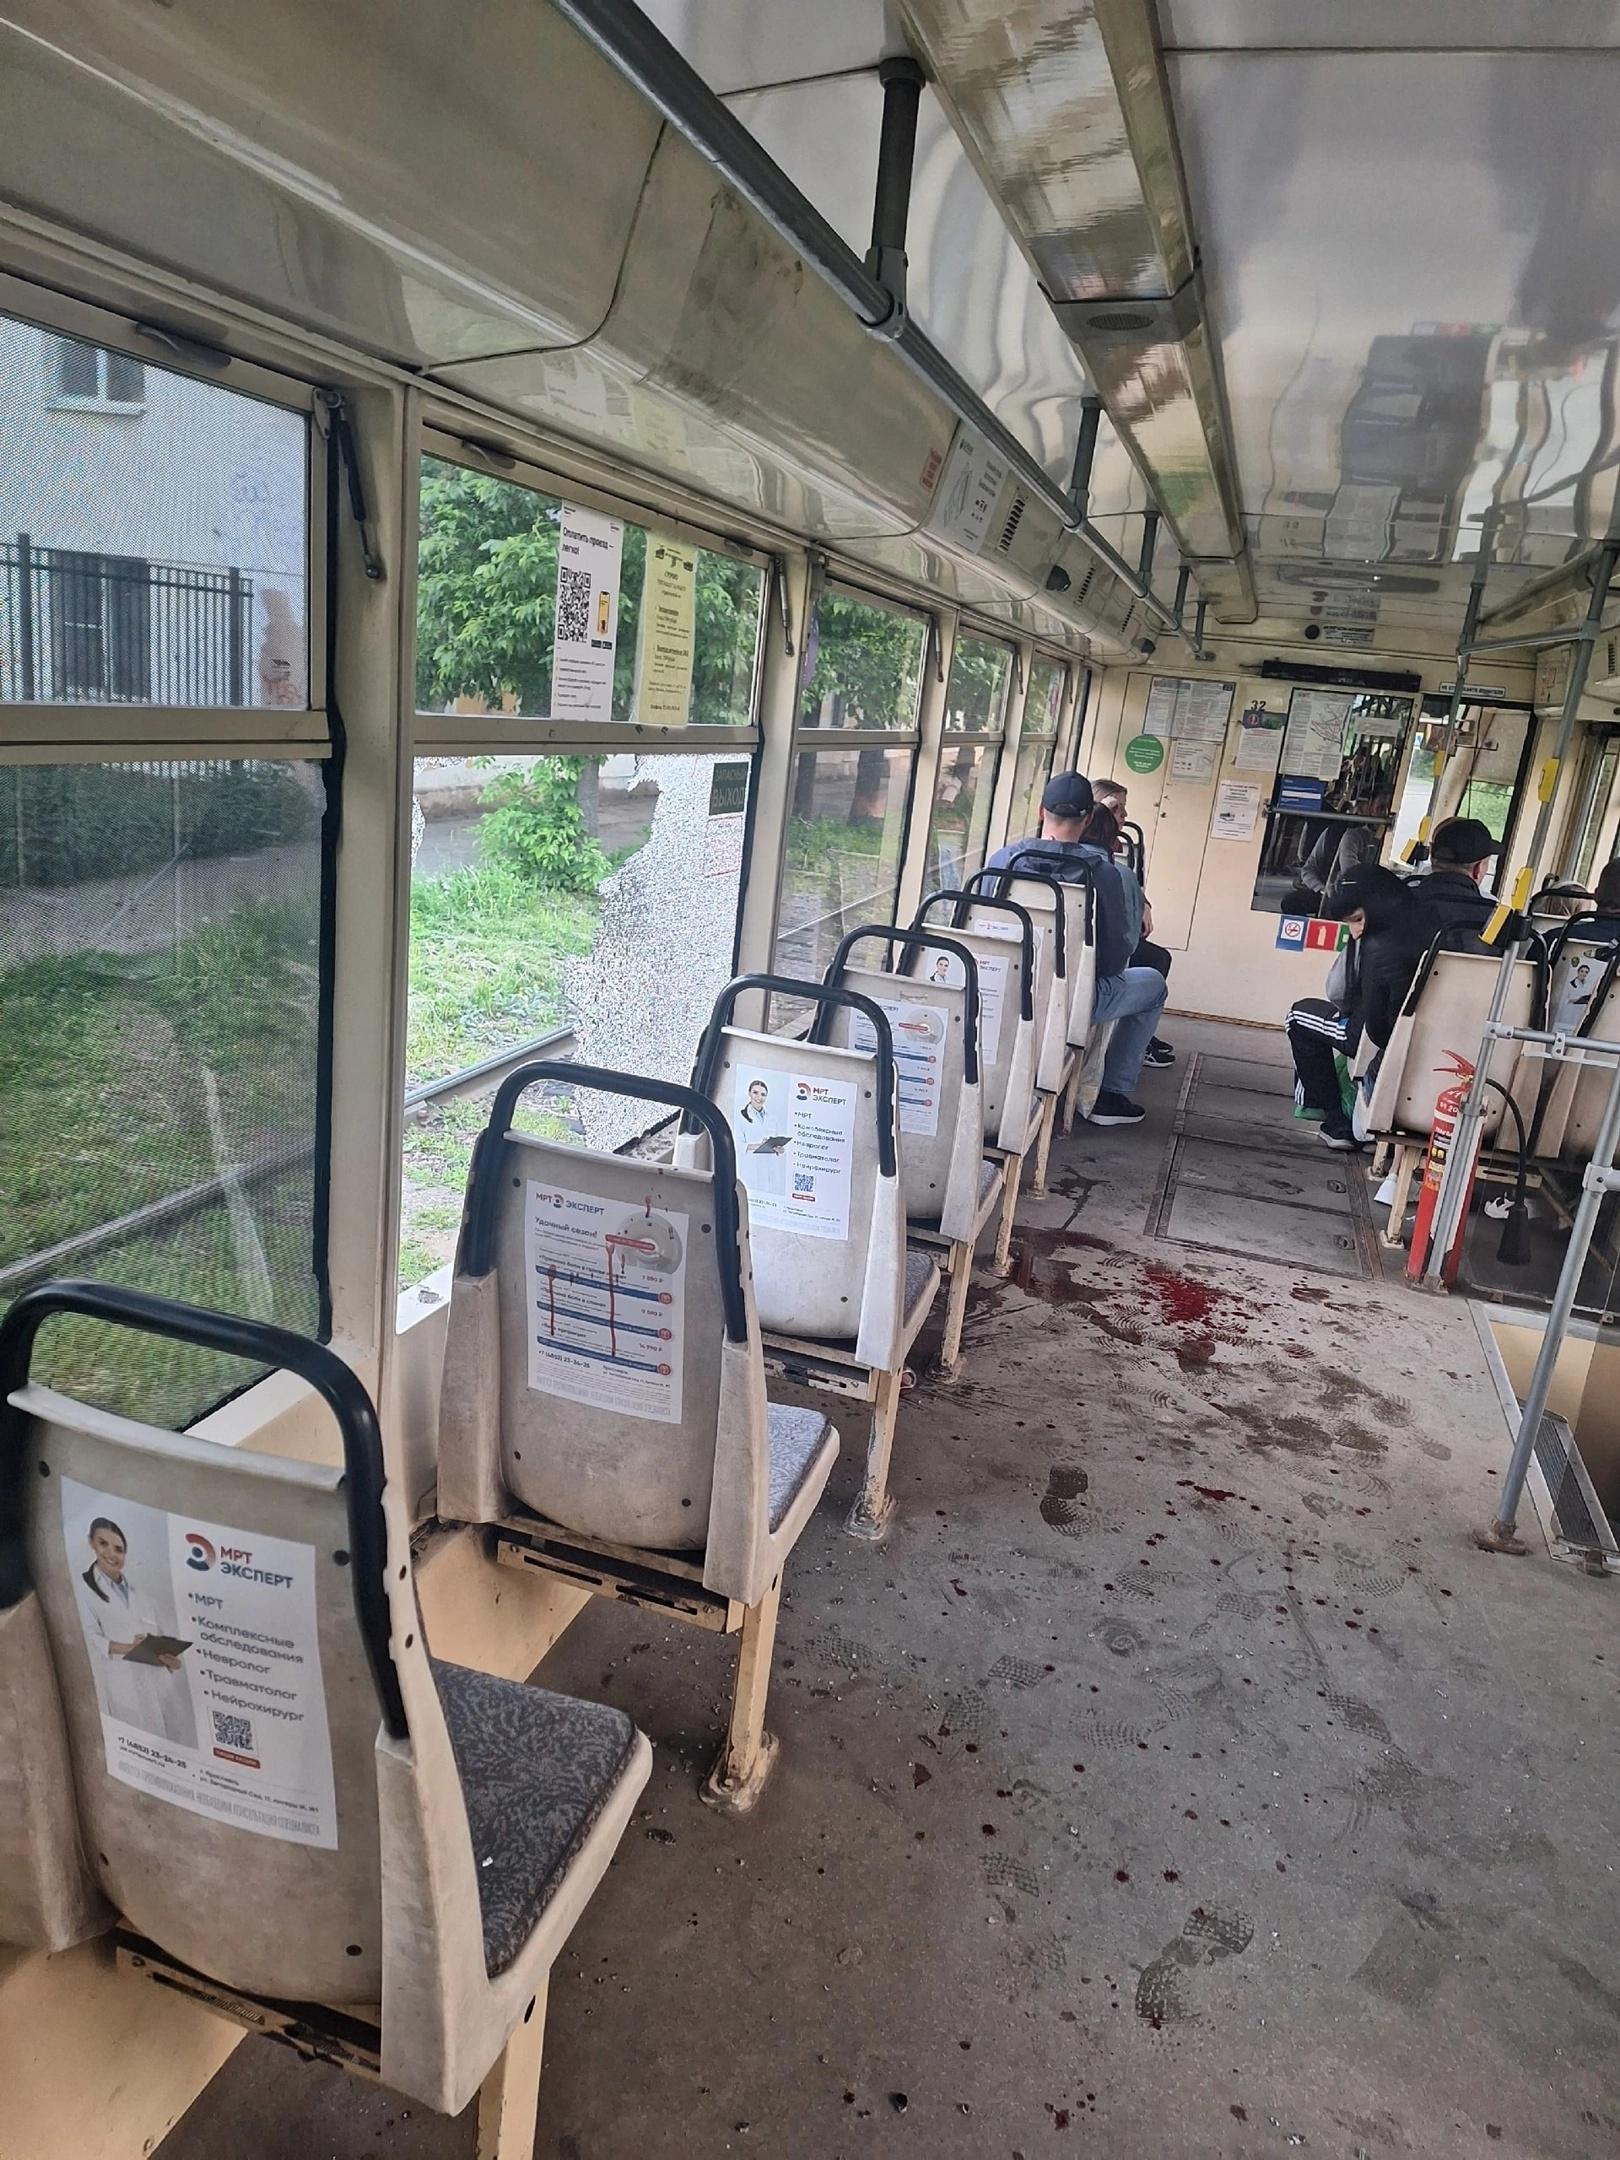 После произошедшего пол трамвая оказался залит кровью